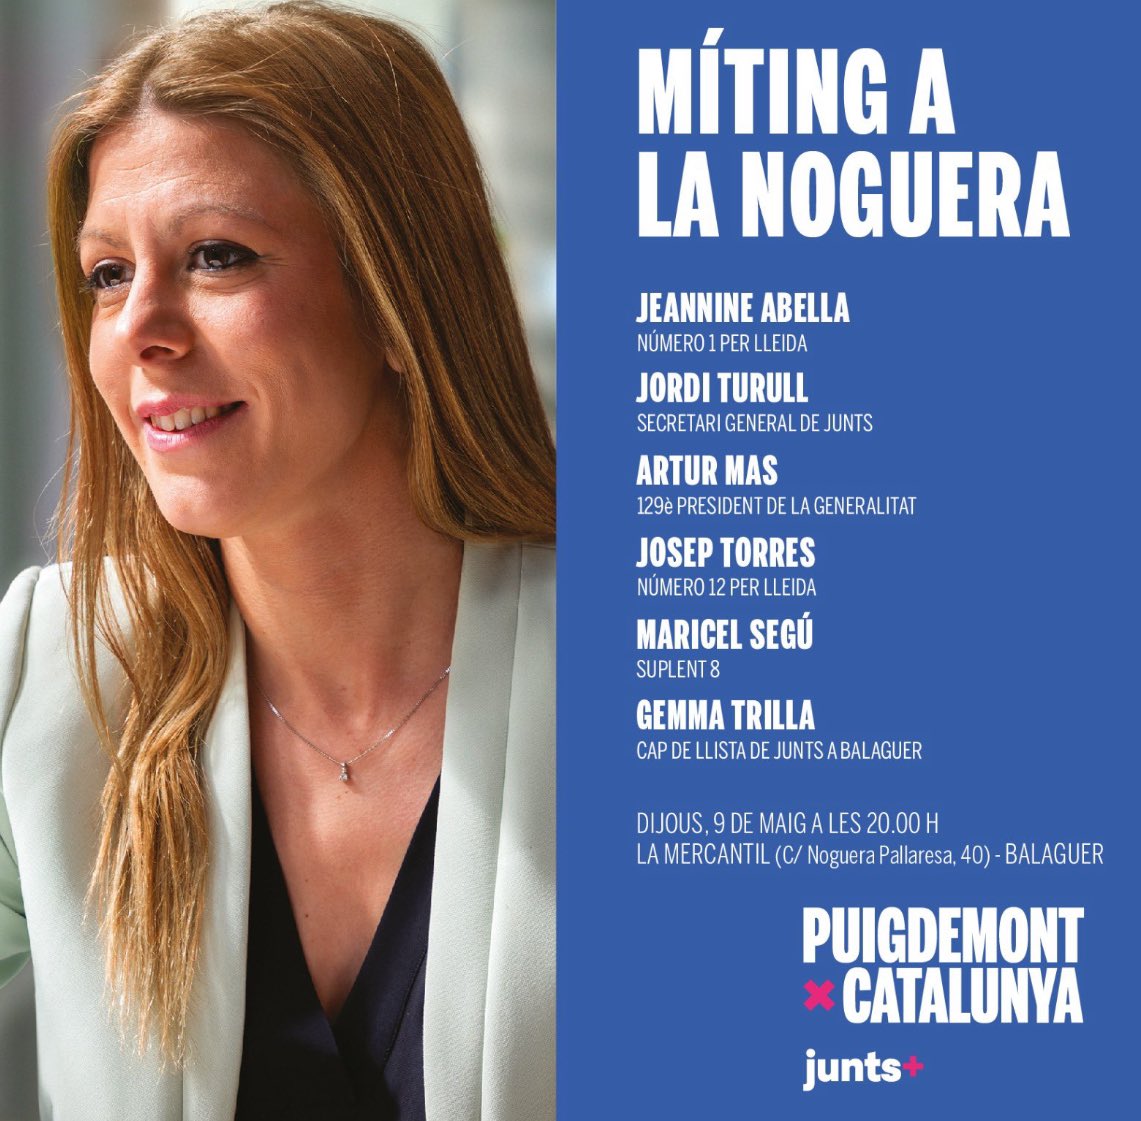 Avui pel matí faré la conferència sota el títol “Les cruïlles del 12 de maig” amb col·loqui posterior, en el marc del cicle de confererències “Barcelona Tribuna” i a la tarda a la #Noguera acabant amb un míting a #Balaguer. #ATotesIArreu #PuigdemontPresident